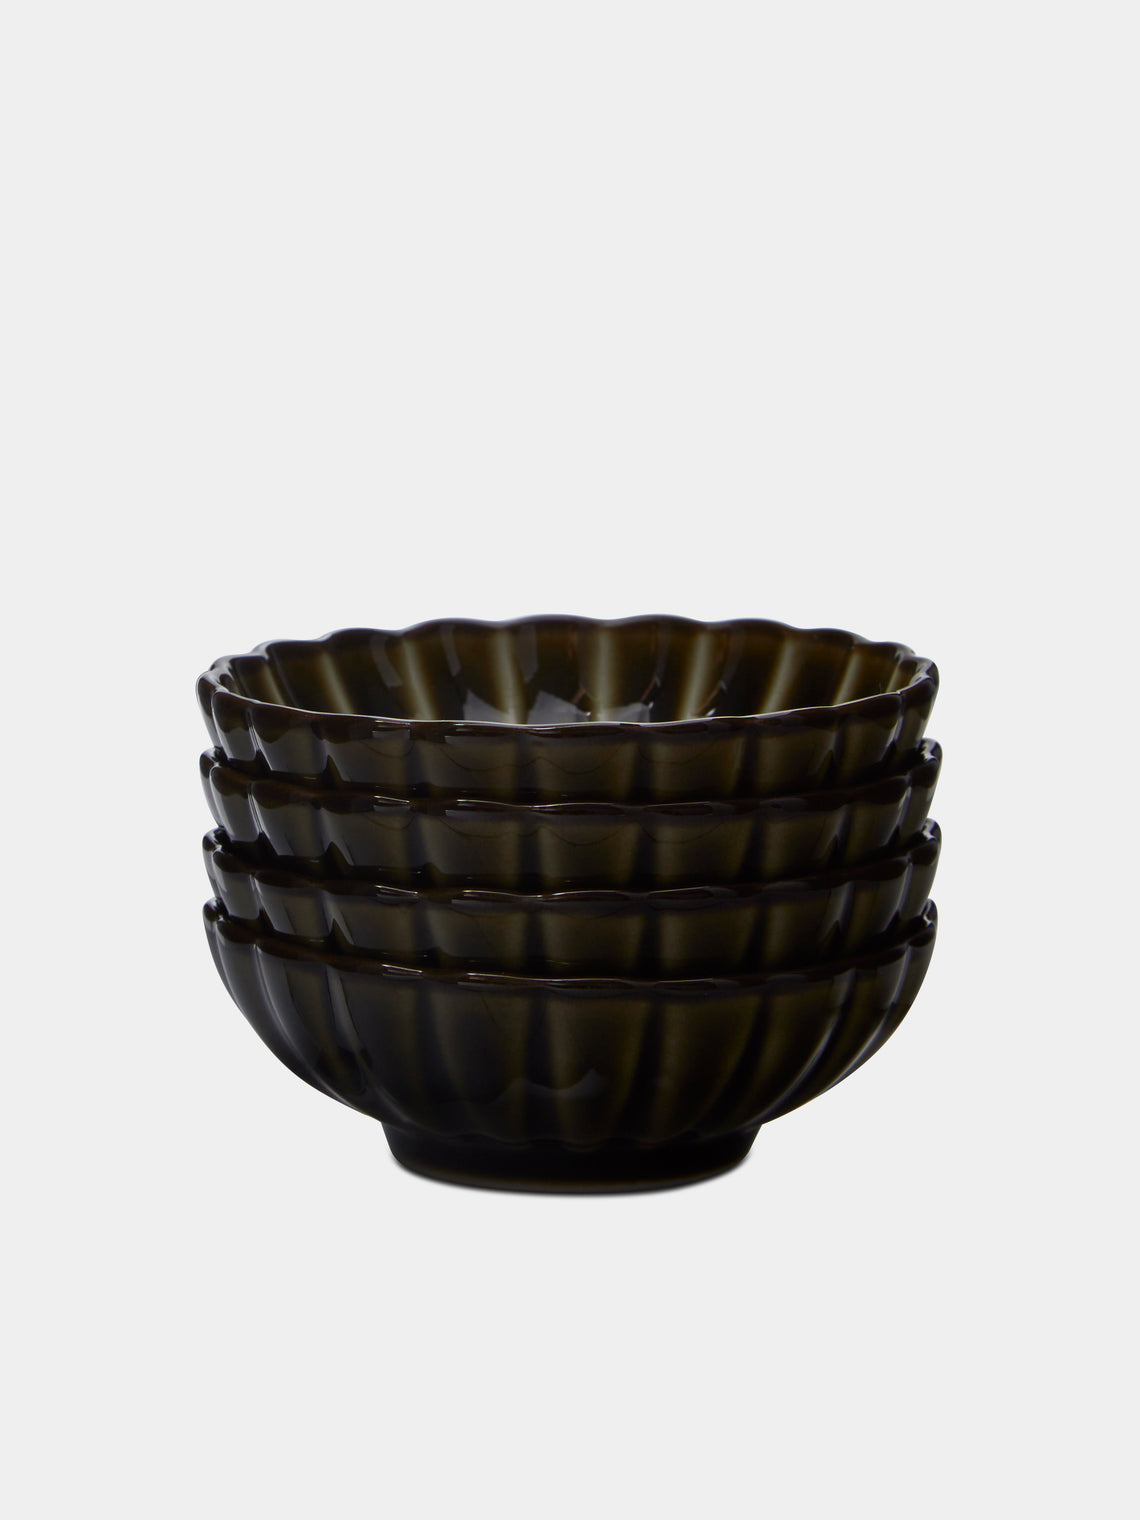 Kaneko Kohyo - Giyaman Urushi Ceramic Condiment Bowls (Set of 4) - Green - ABASK